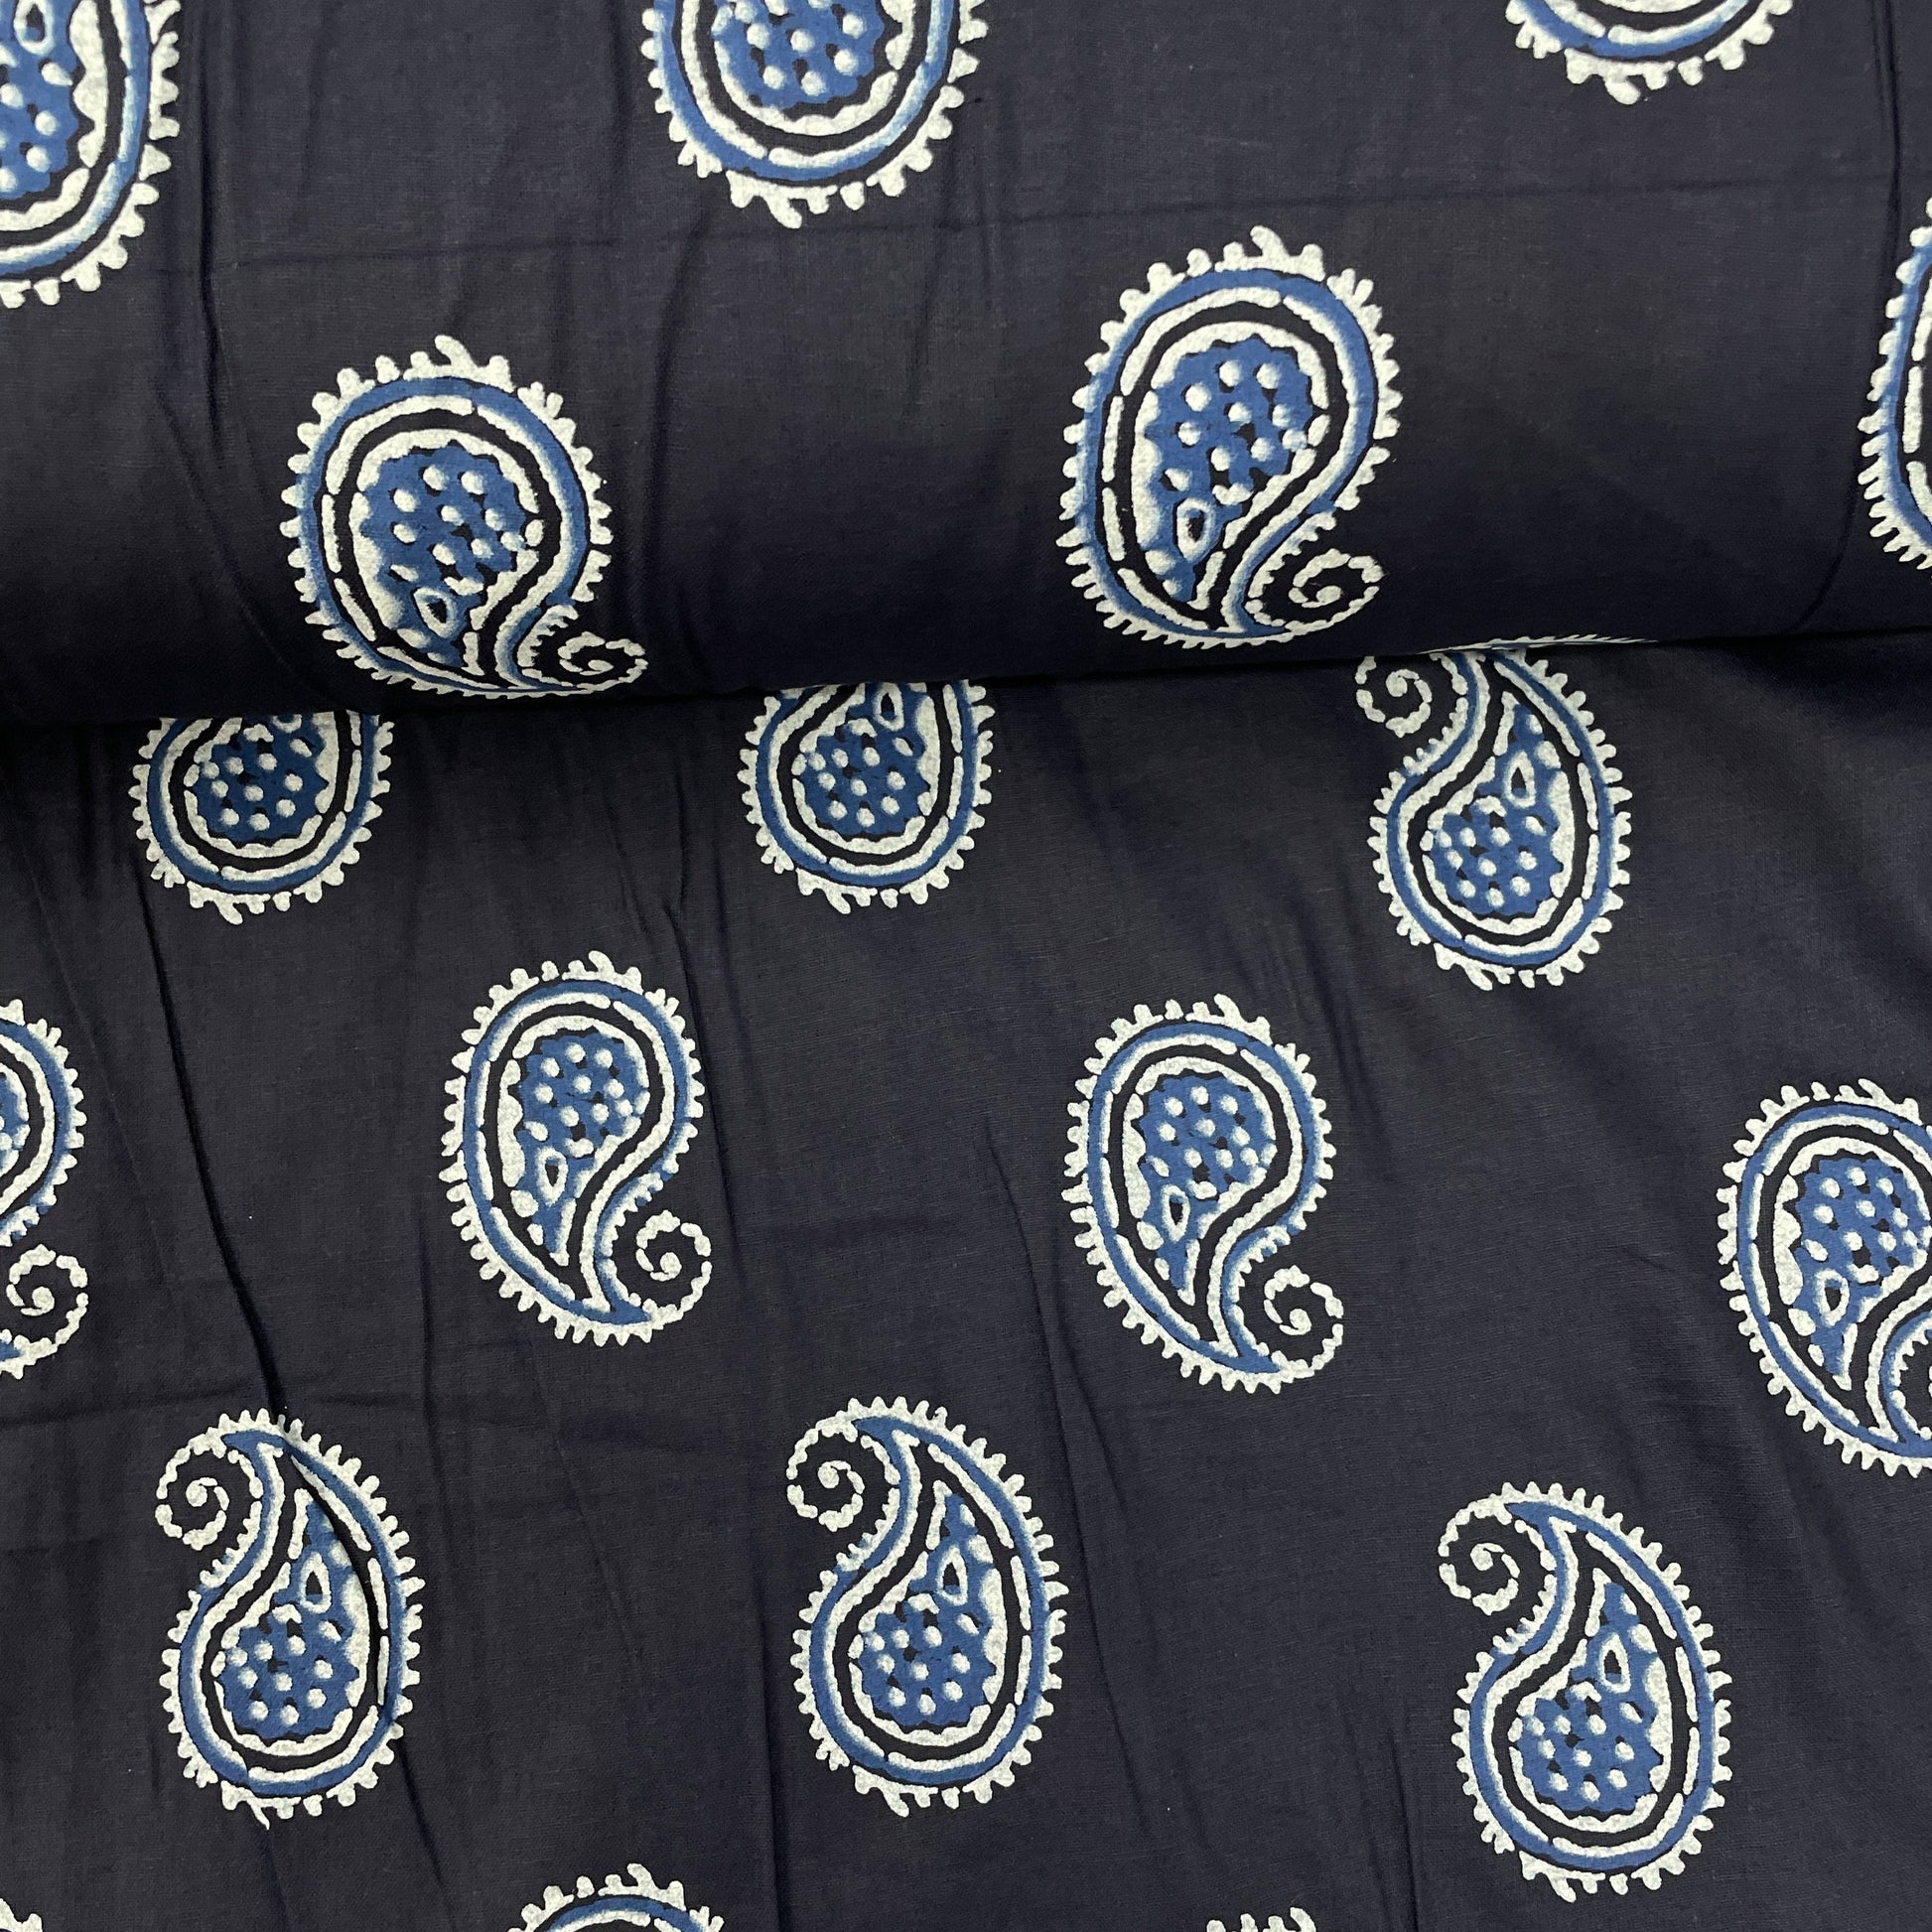 Indigo Paisley Print Poplin Cotton Fabric - TradeUNO